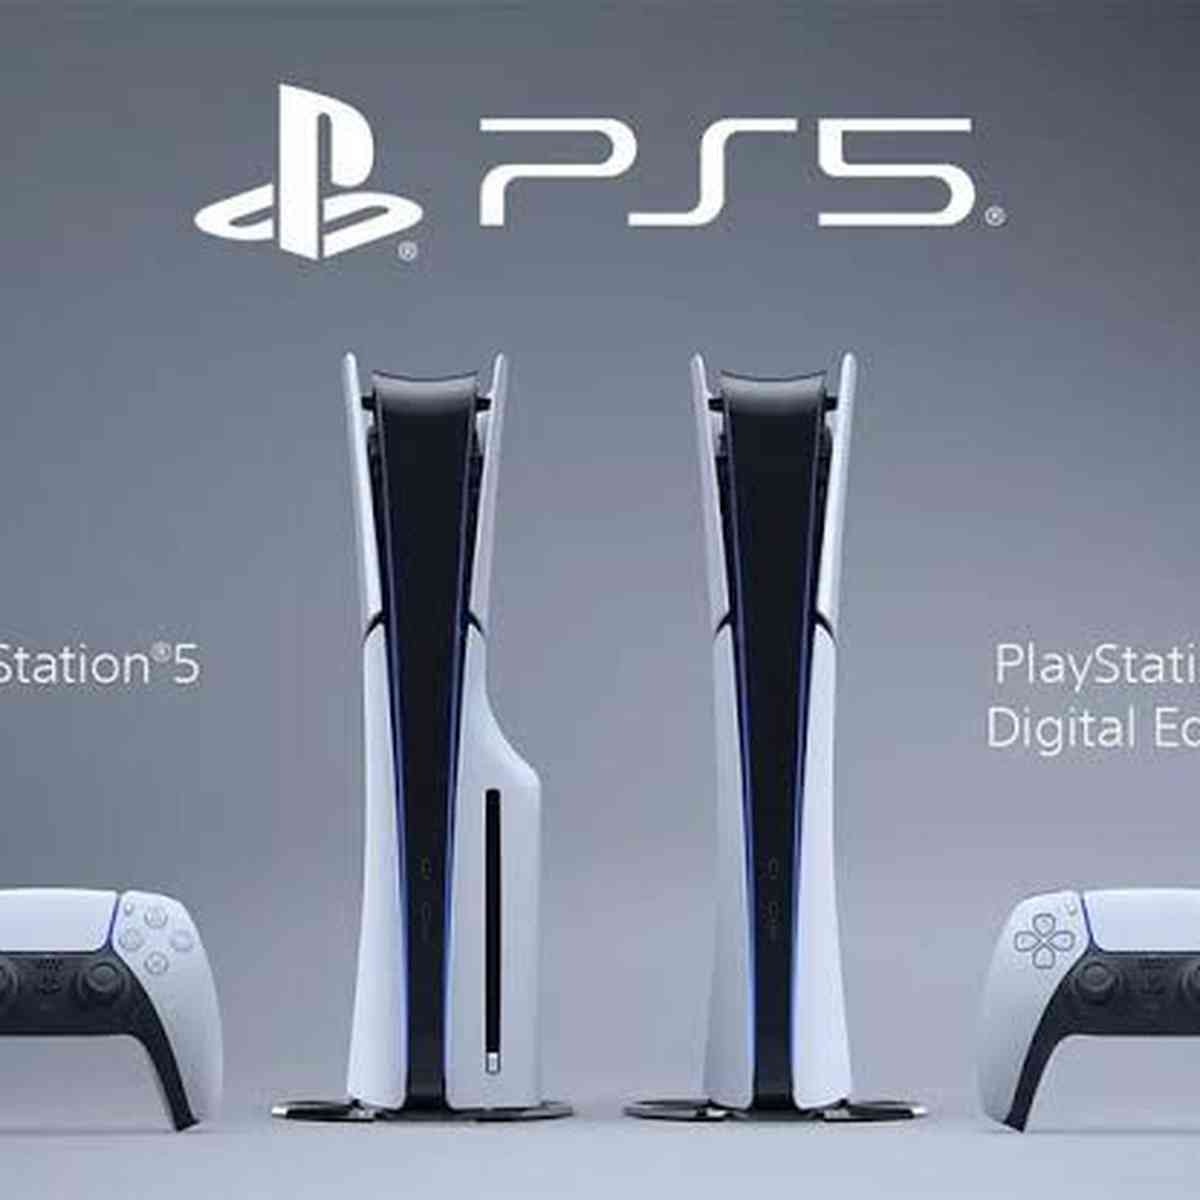 PS5: Videogame da Sony 'custa' 820 horas de trabalho no Brasil